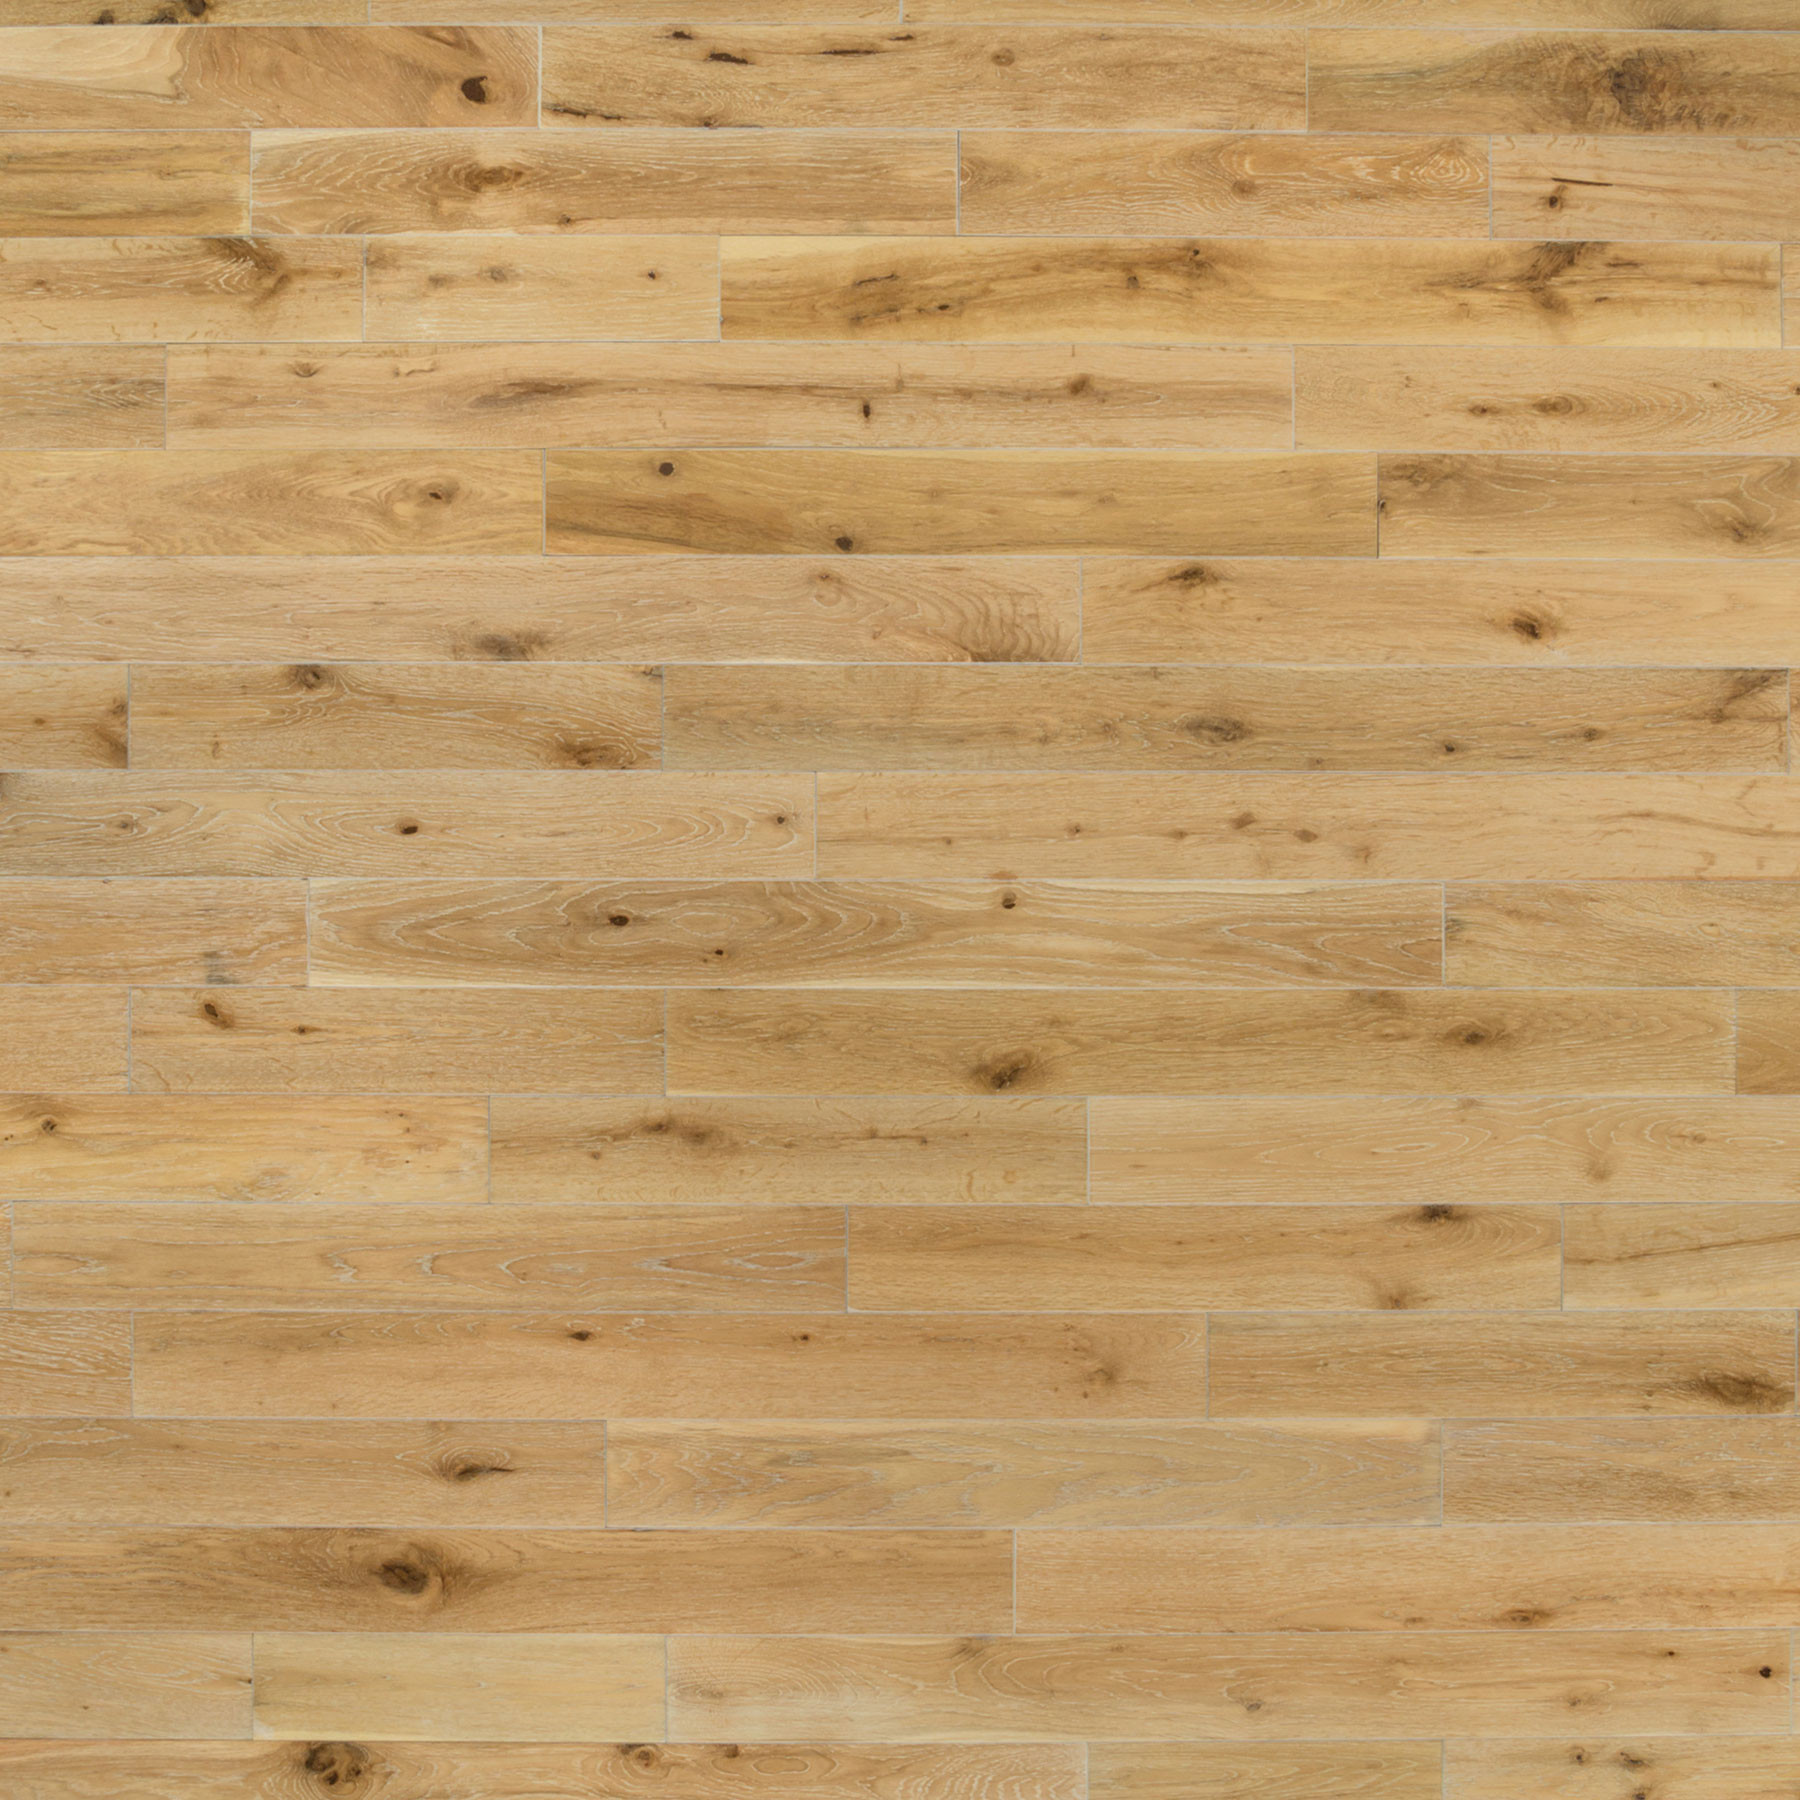 27 Trendy White Oak Hardwood Flooring Finished 2024 free download white oak hardwood flooring finished of harbor oak 3 1 2e280b3 white oak white washed etx surfaces pertaining to harbor oak 3 1 2e280b3 white oak white washed